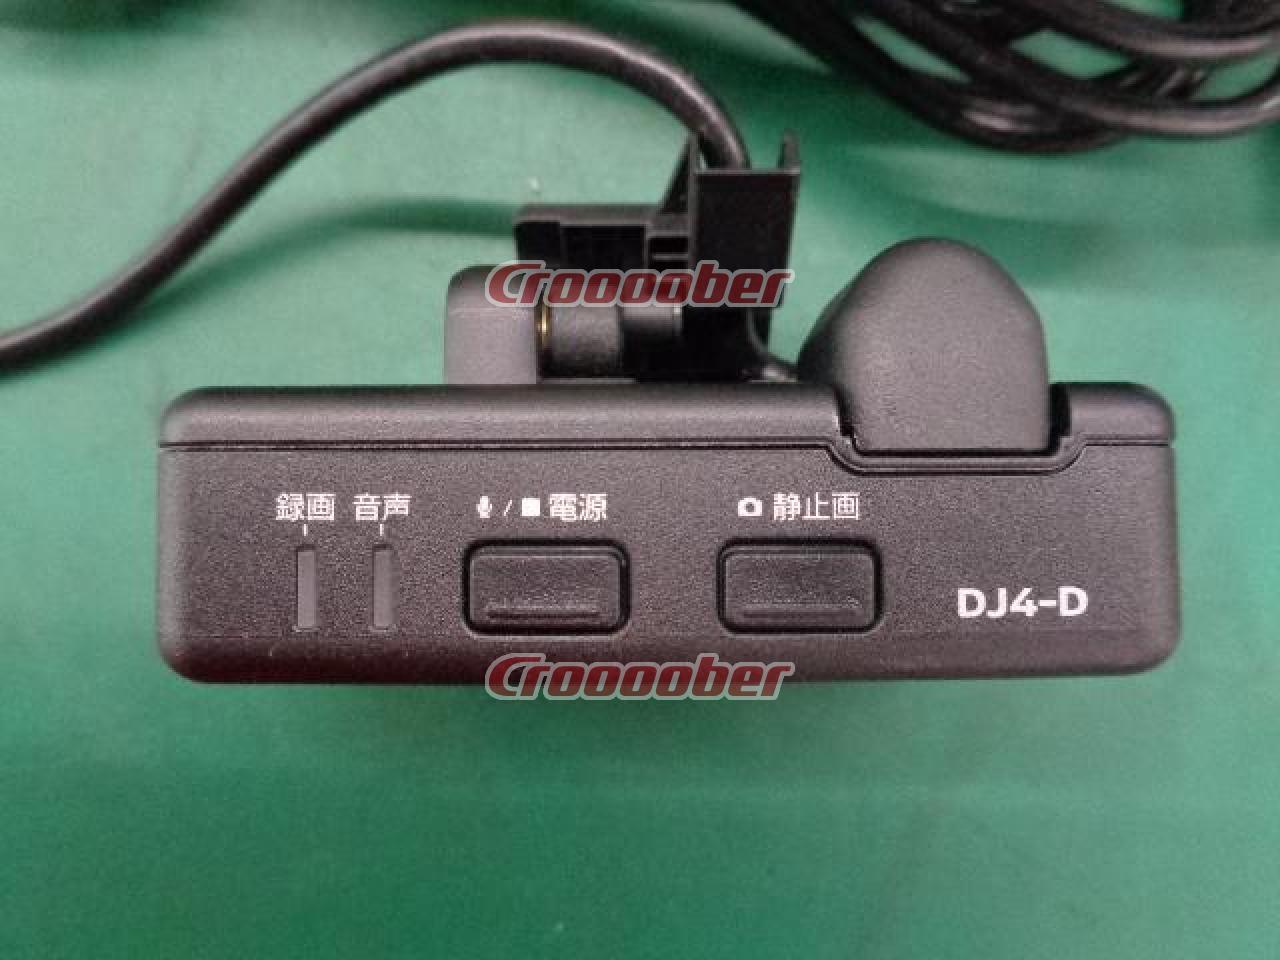 日産純正 ドライブレコーダー DJ4-D カーAVアクセサリー ドライブレコーダーパーツの通販なら Croooober(クルーバー)